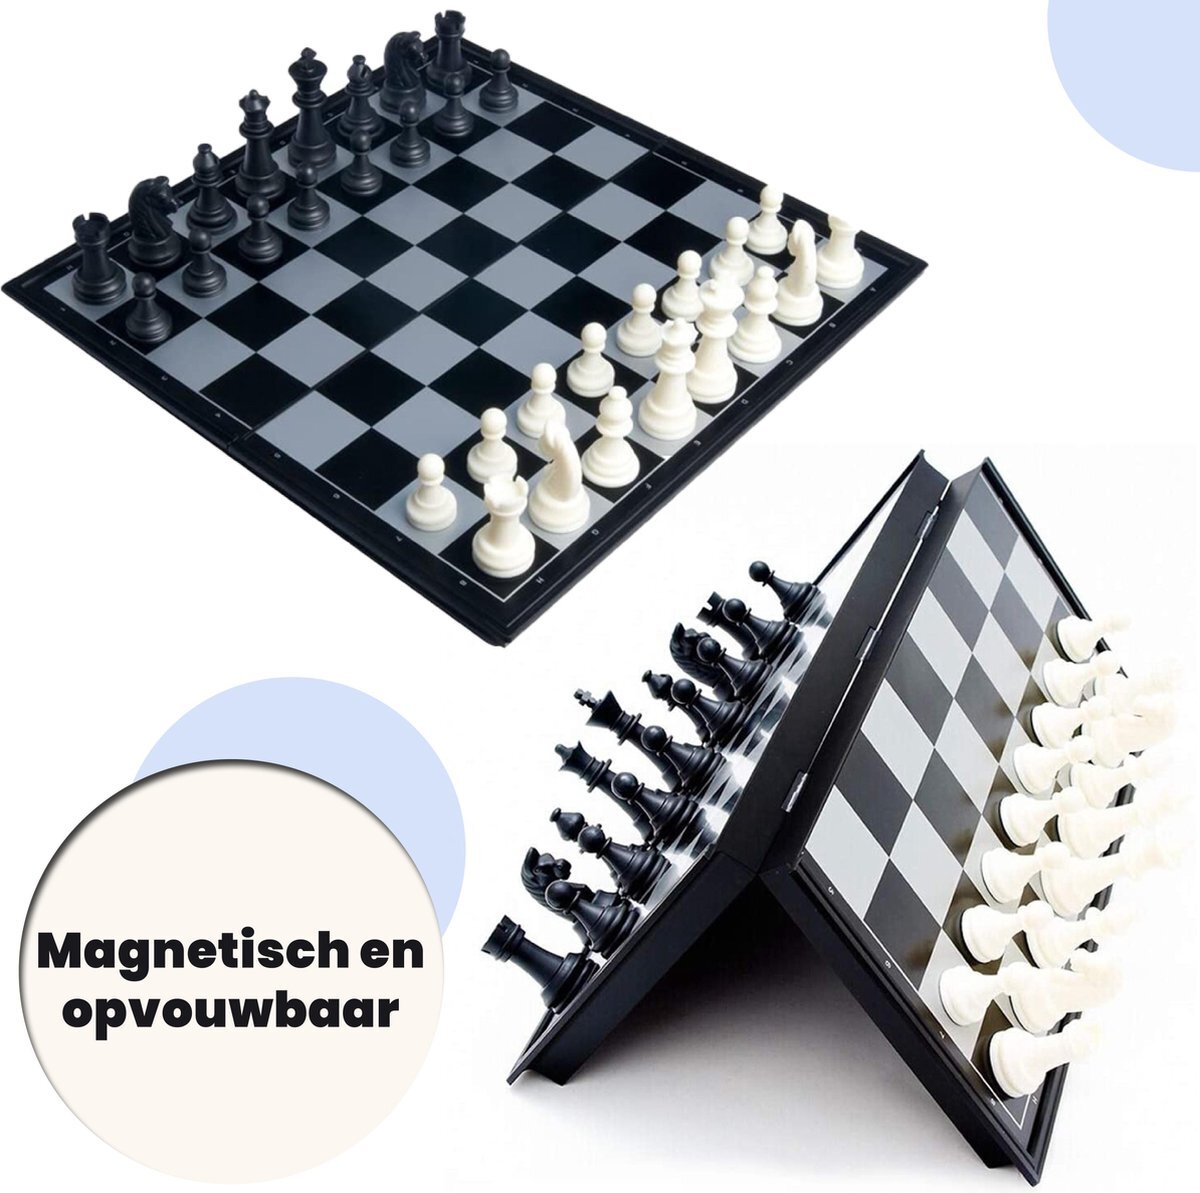 Activ24 Activ24™ - Medium schaakspel 32x32 cm – met zwarte & witte schaakstukken – opvouwbaar magnetisch schaakset schaakbord schaken